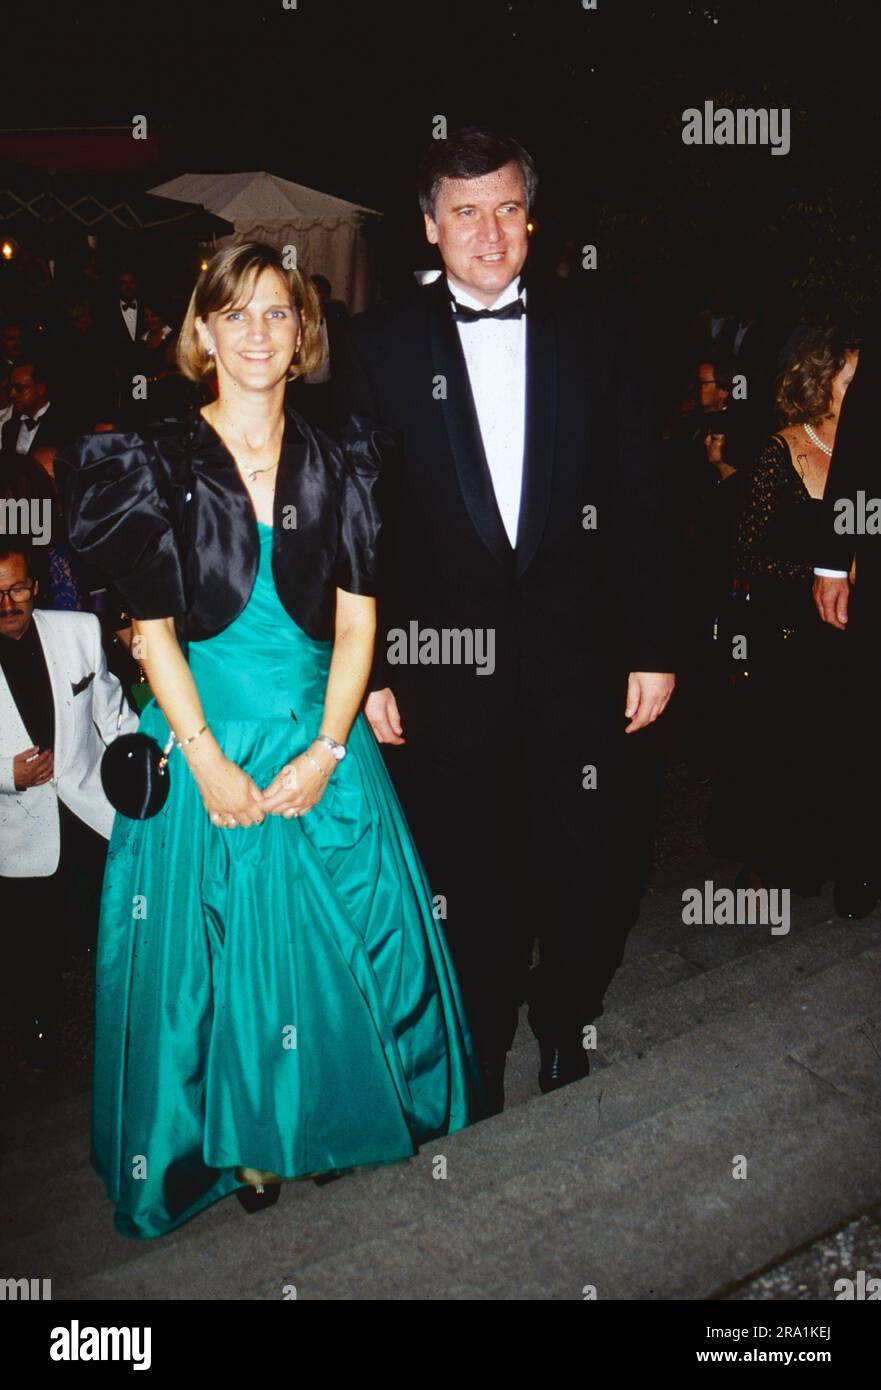 CSU Politiker Horst Seehofer mit seiner ersten Ehefrau Christine Christl BEI einer Veranstaltung, vers 1980. Banque D'Images